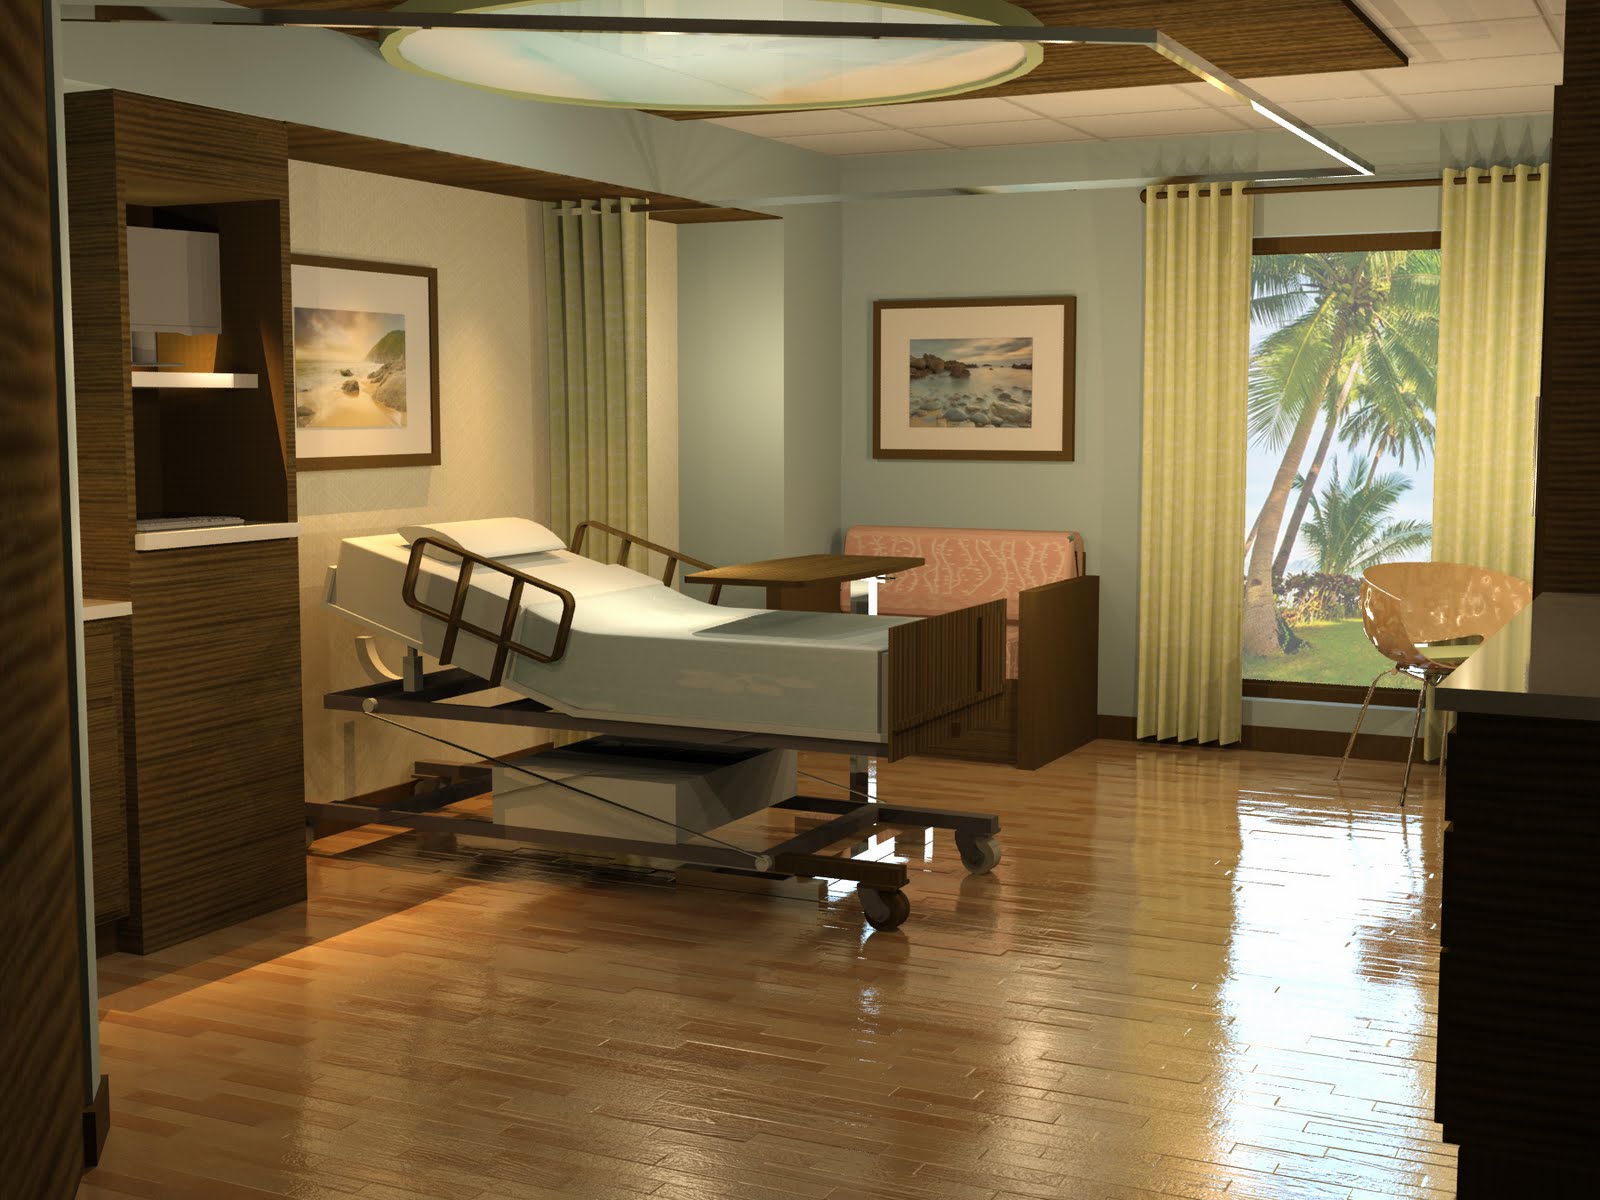 Patient Room Modern | Joy Studio Design Gallery - Best Design